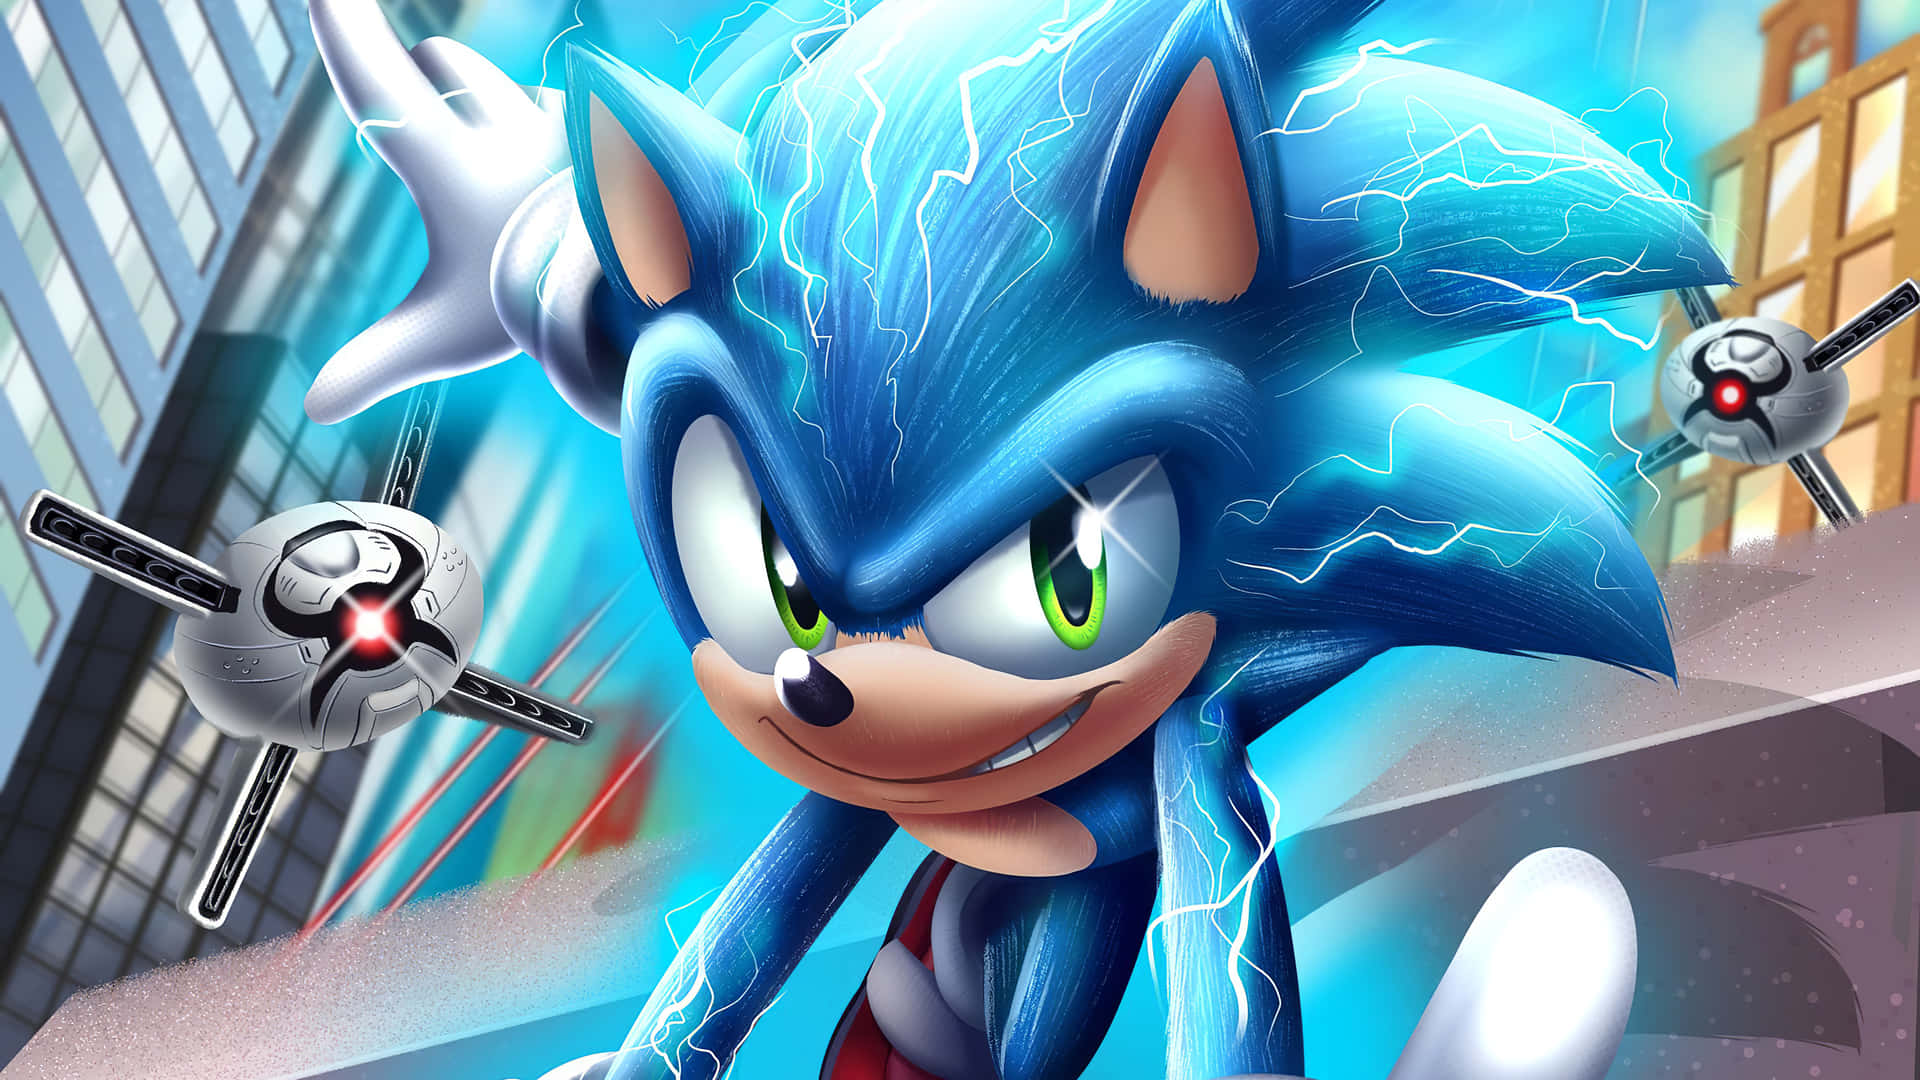 Sonicthe Hedgehog, Hastighetsmästaren Och Världens Försvarare